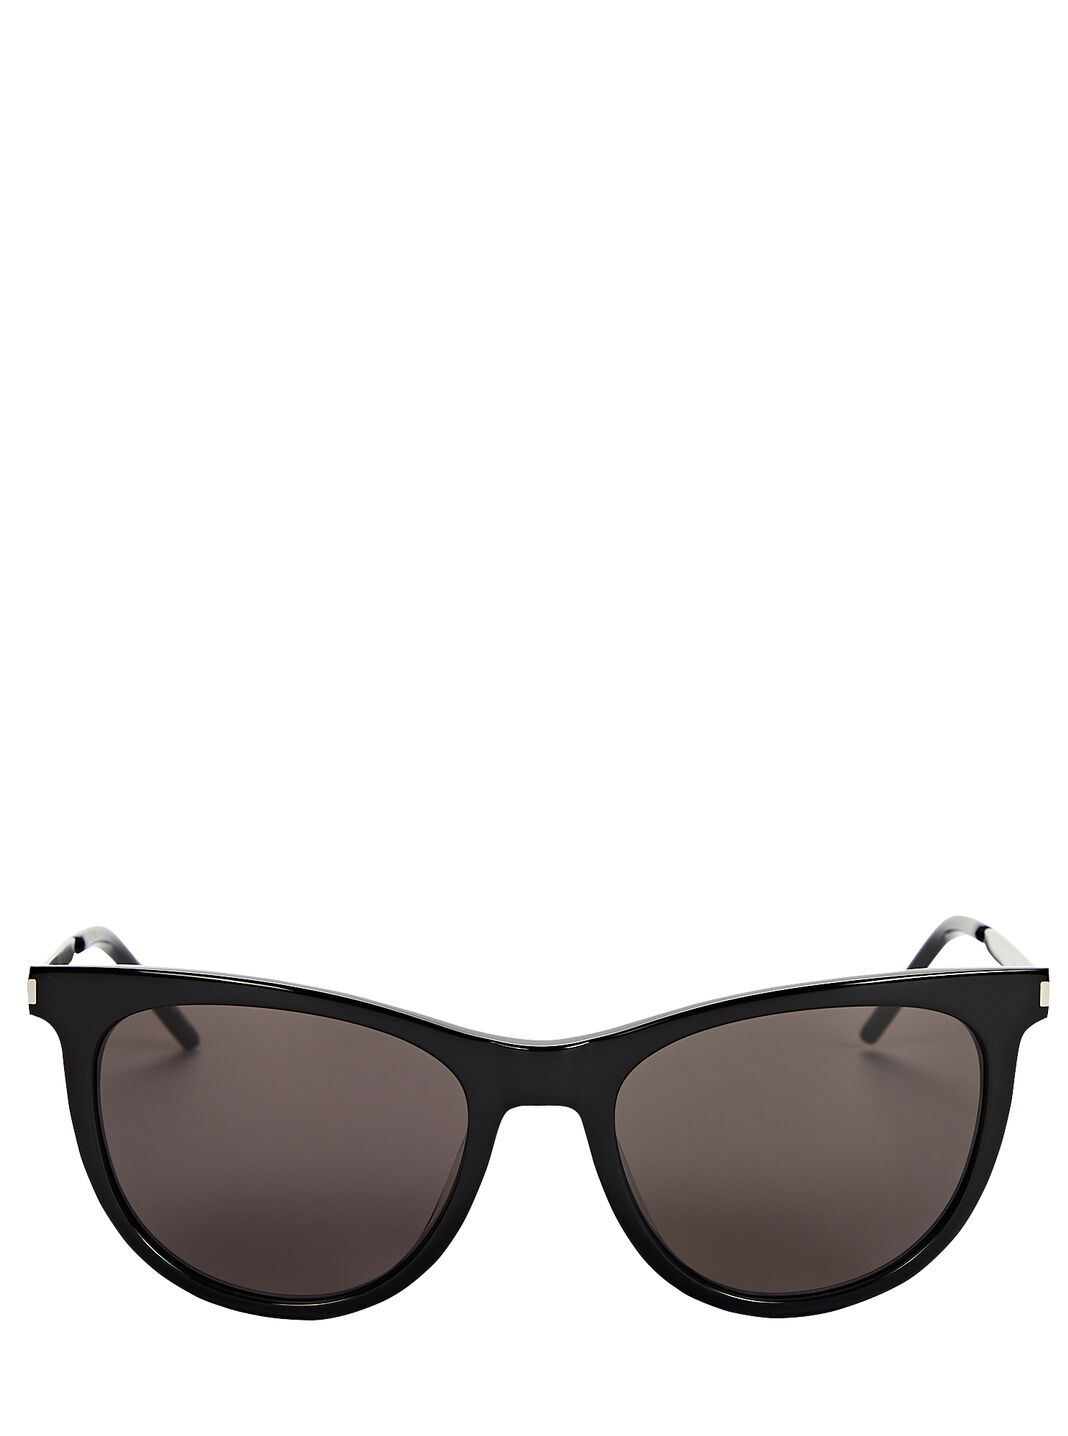 Soft Cat-Eye Sunglasses